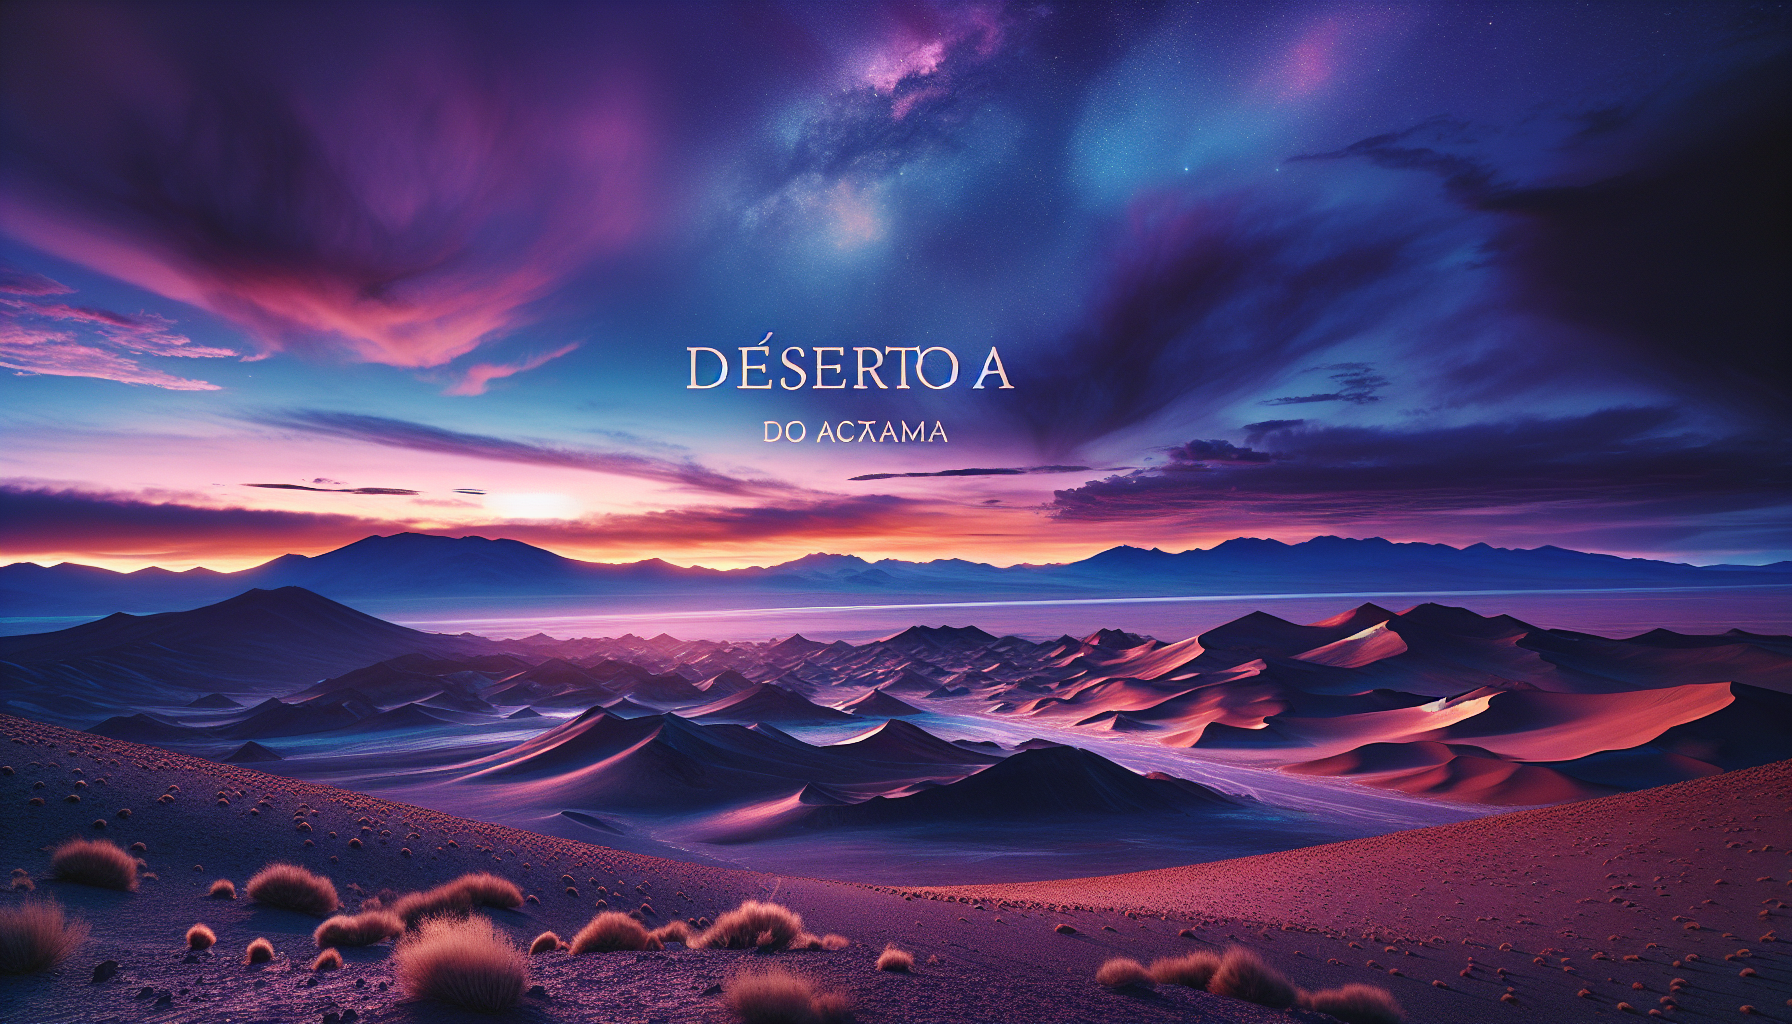 Guia Completo: Descubra os Segredos e Belezas do Deserto do Atacama